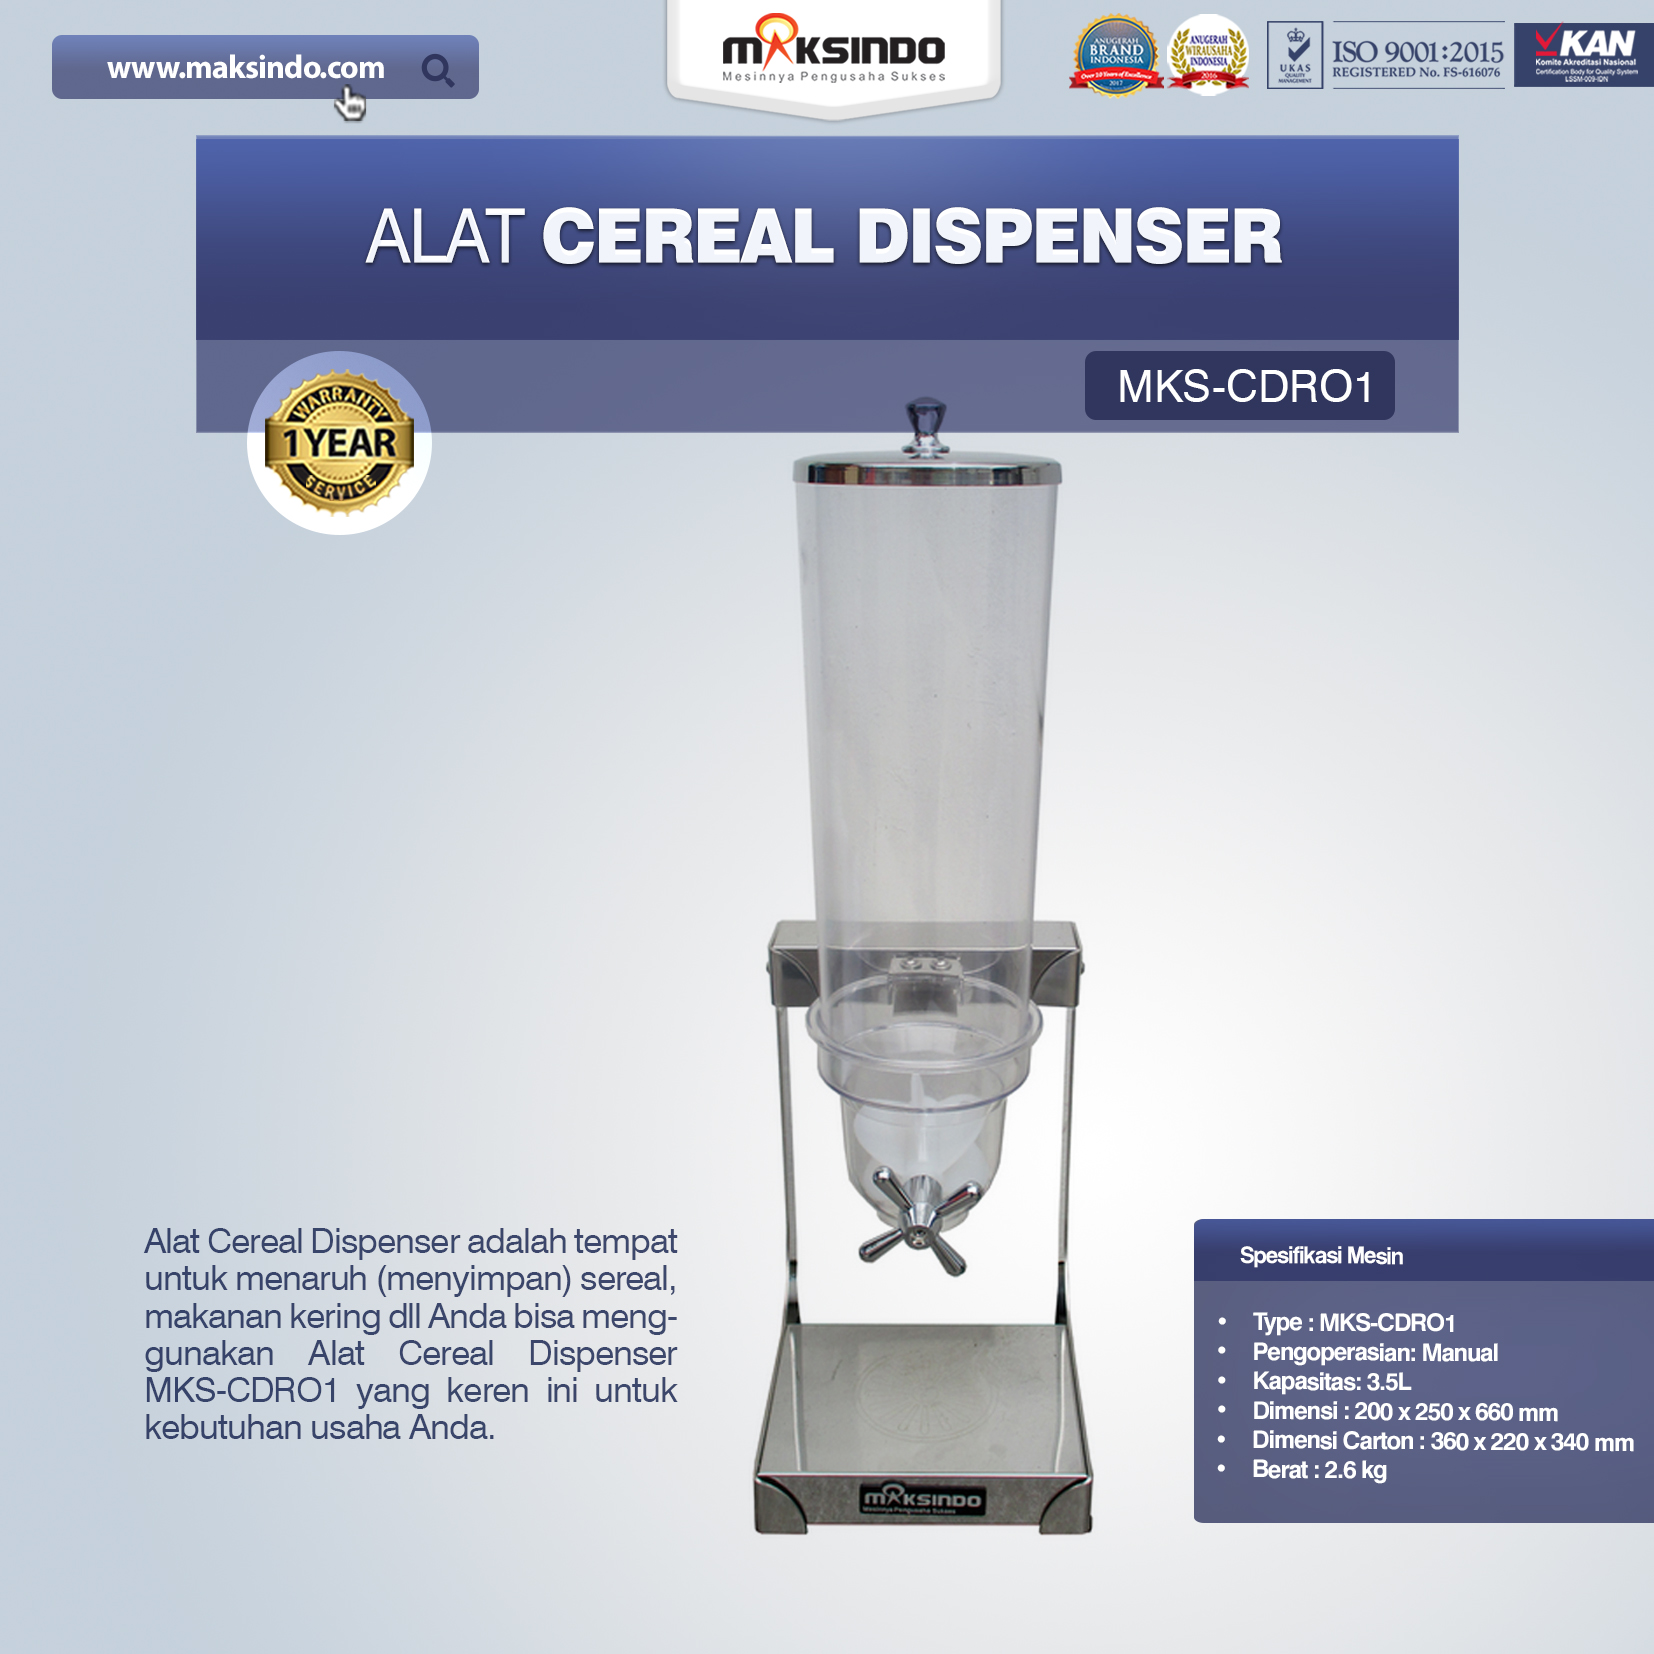 Jual Alat Cereal Dispenser MKS-CDR01 di Malang